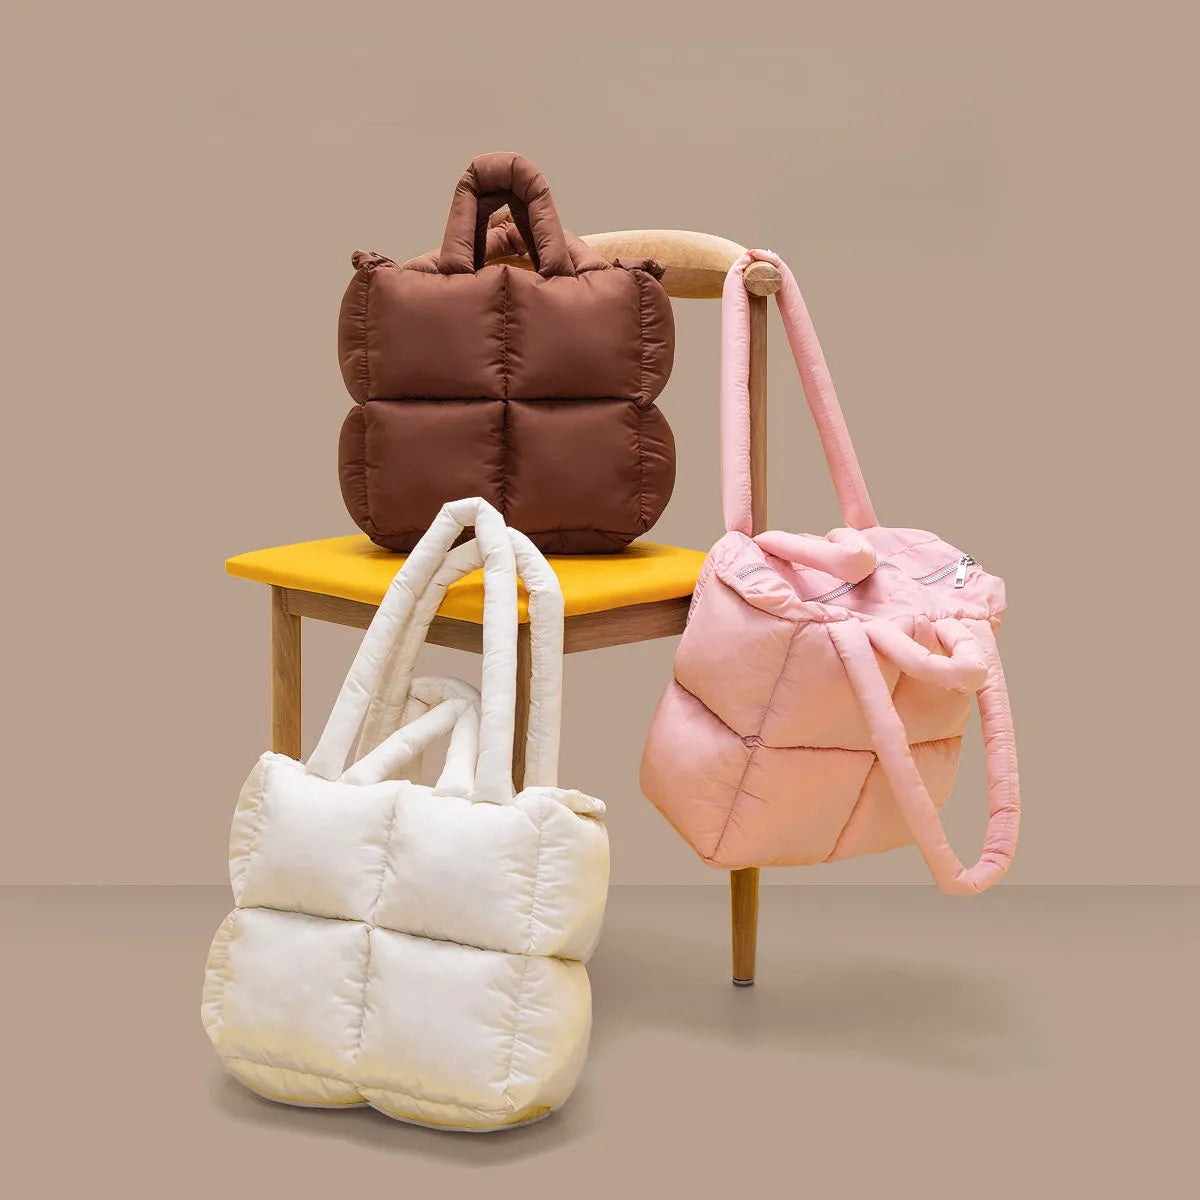 TEEK - Nylon Square Puff Handbag BAG theteekdotcom   